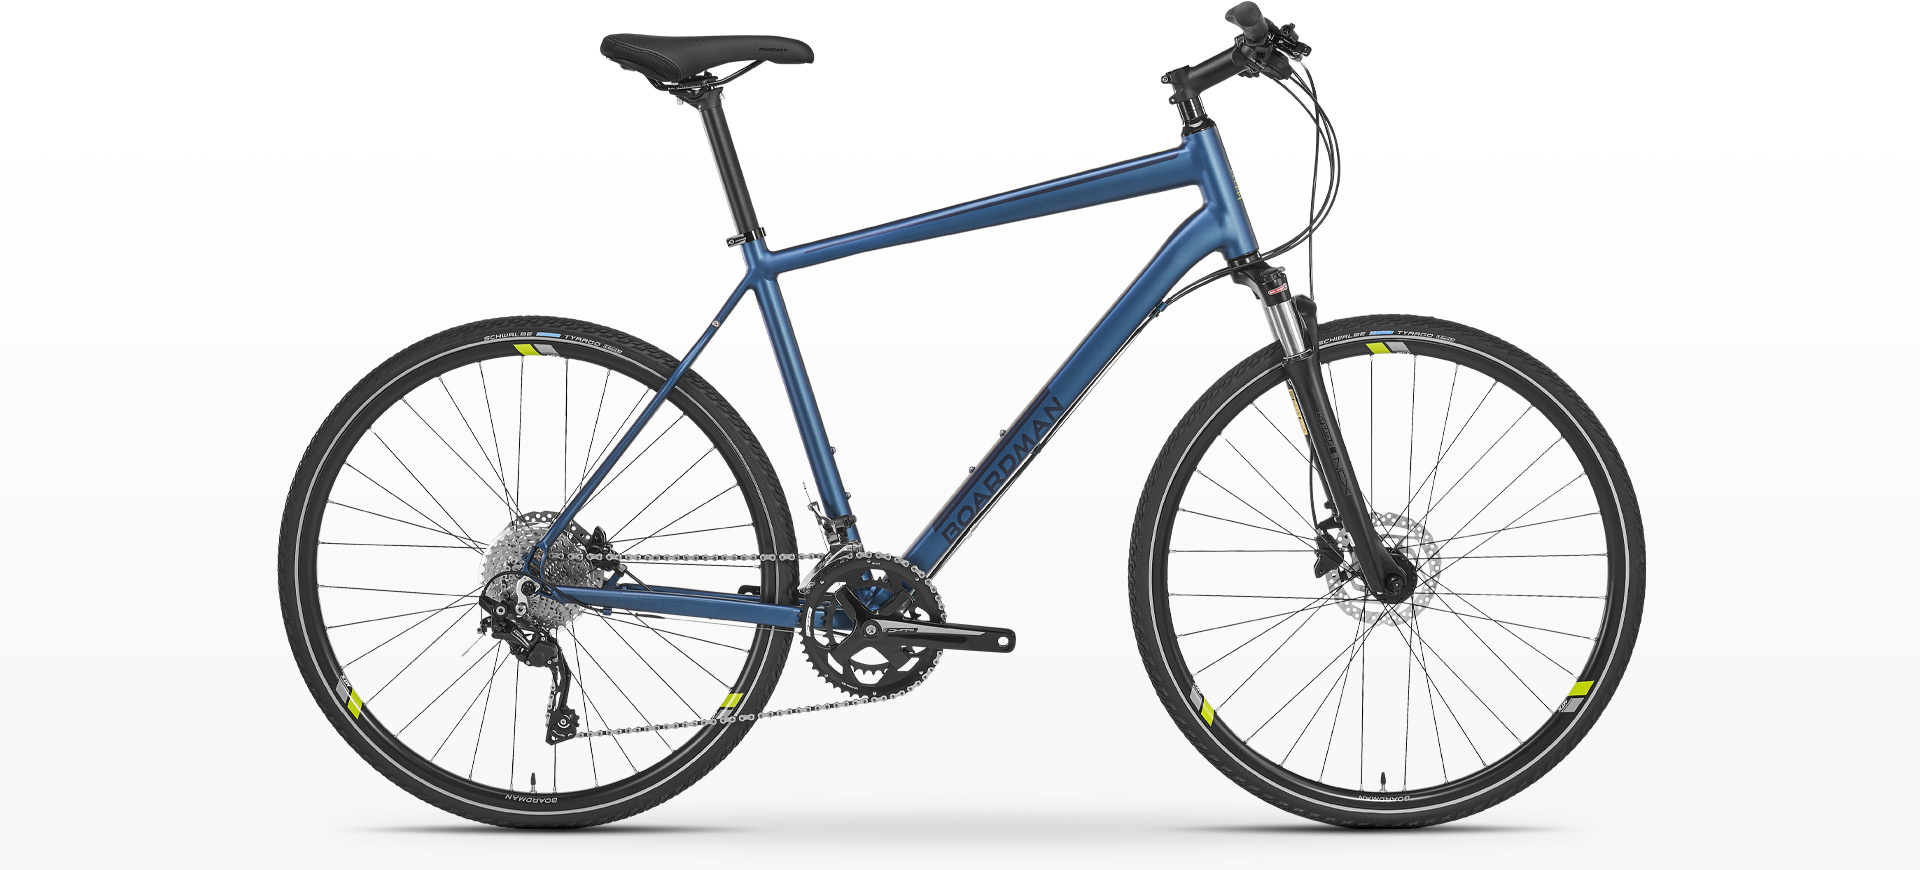 Boardman MTX 8.8 Hybrid Bike in Metallic Blue